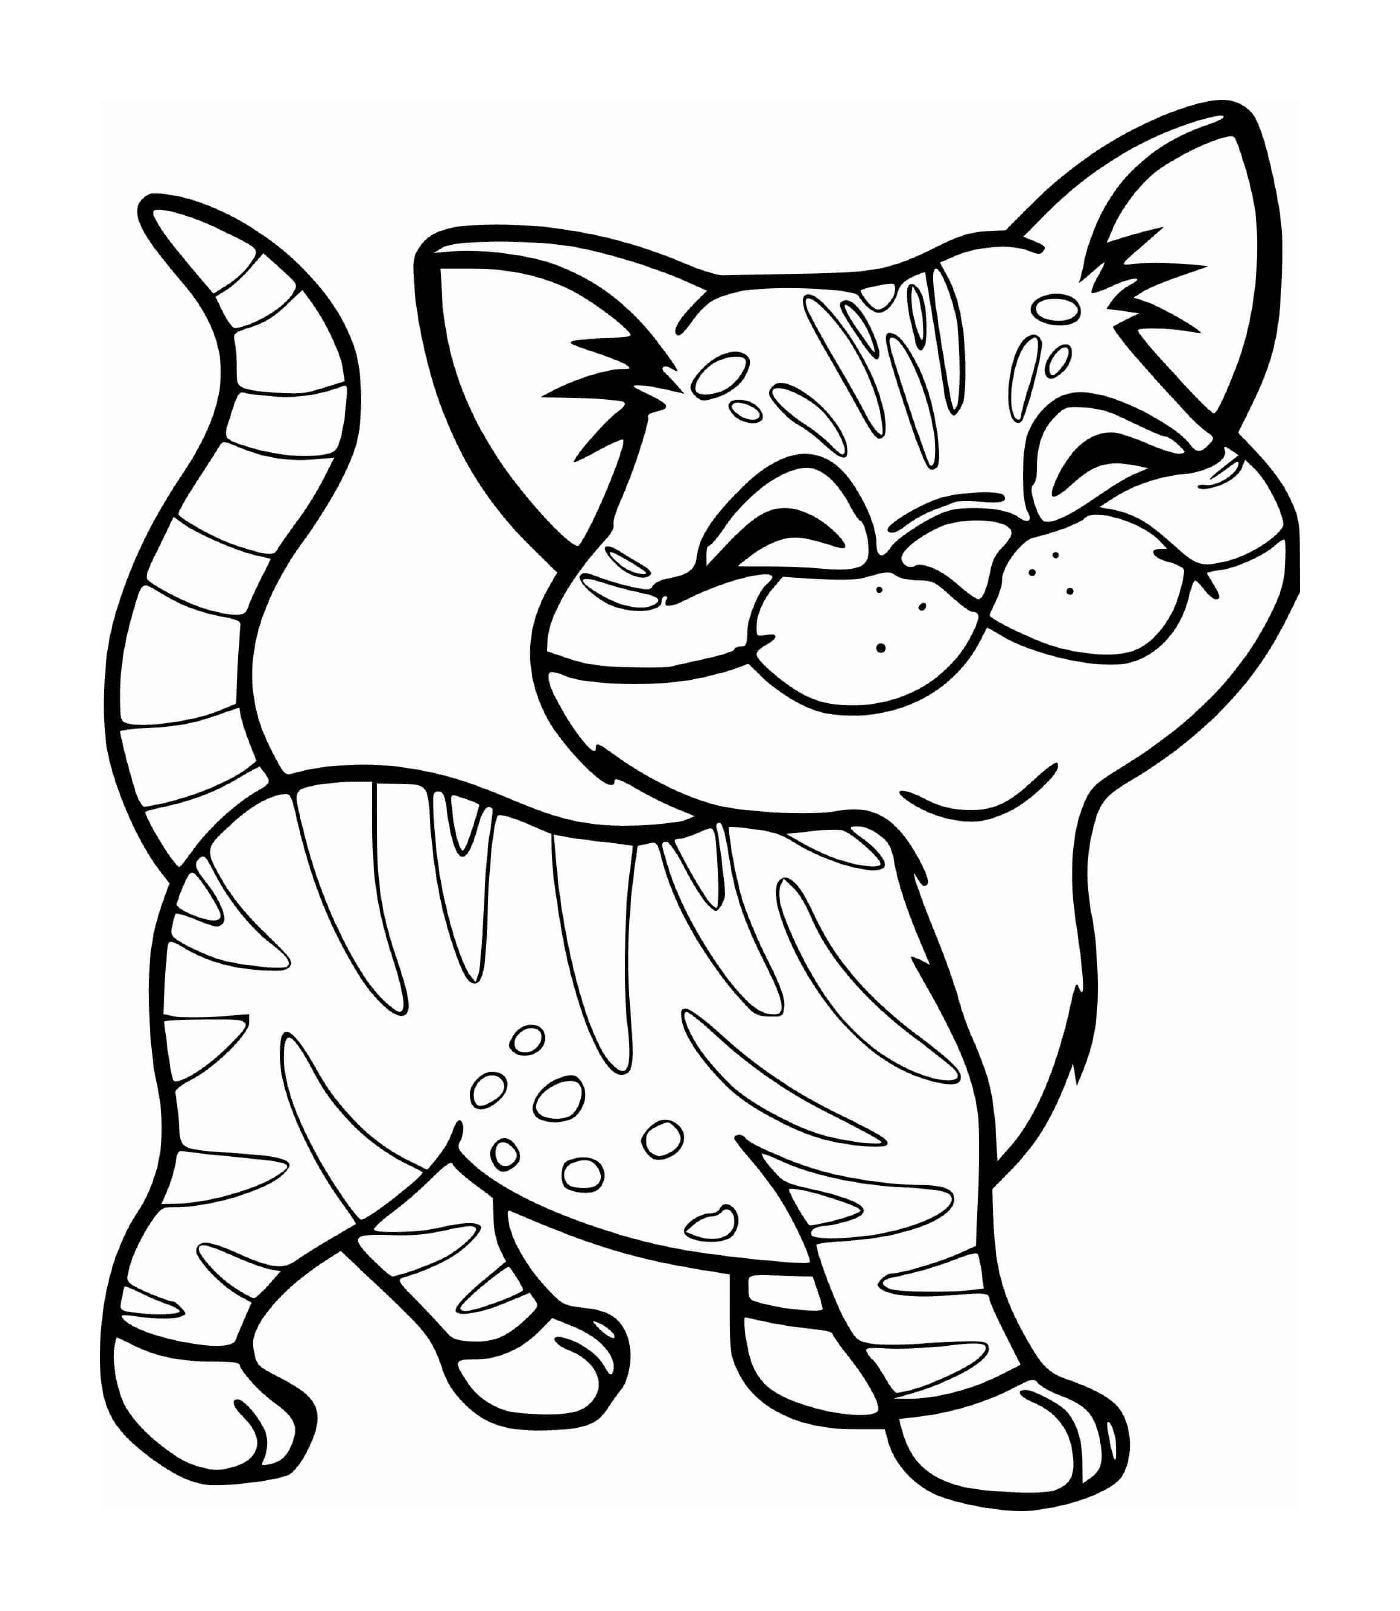  Ein niedliches Kätzchen mit einem Tigerstreifen lächelnd 